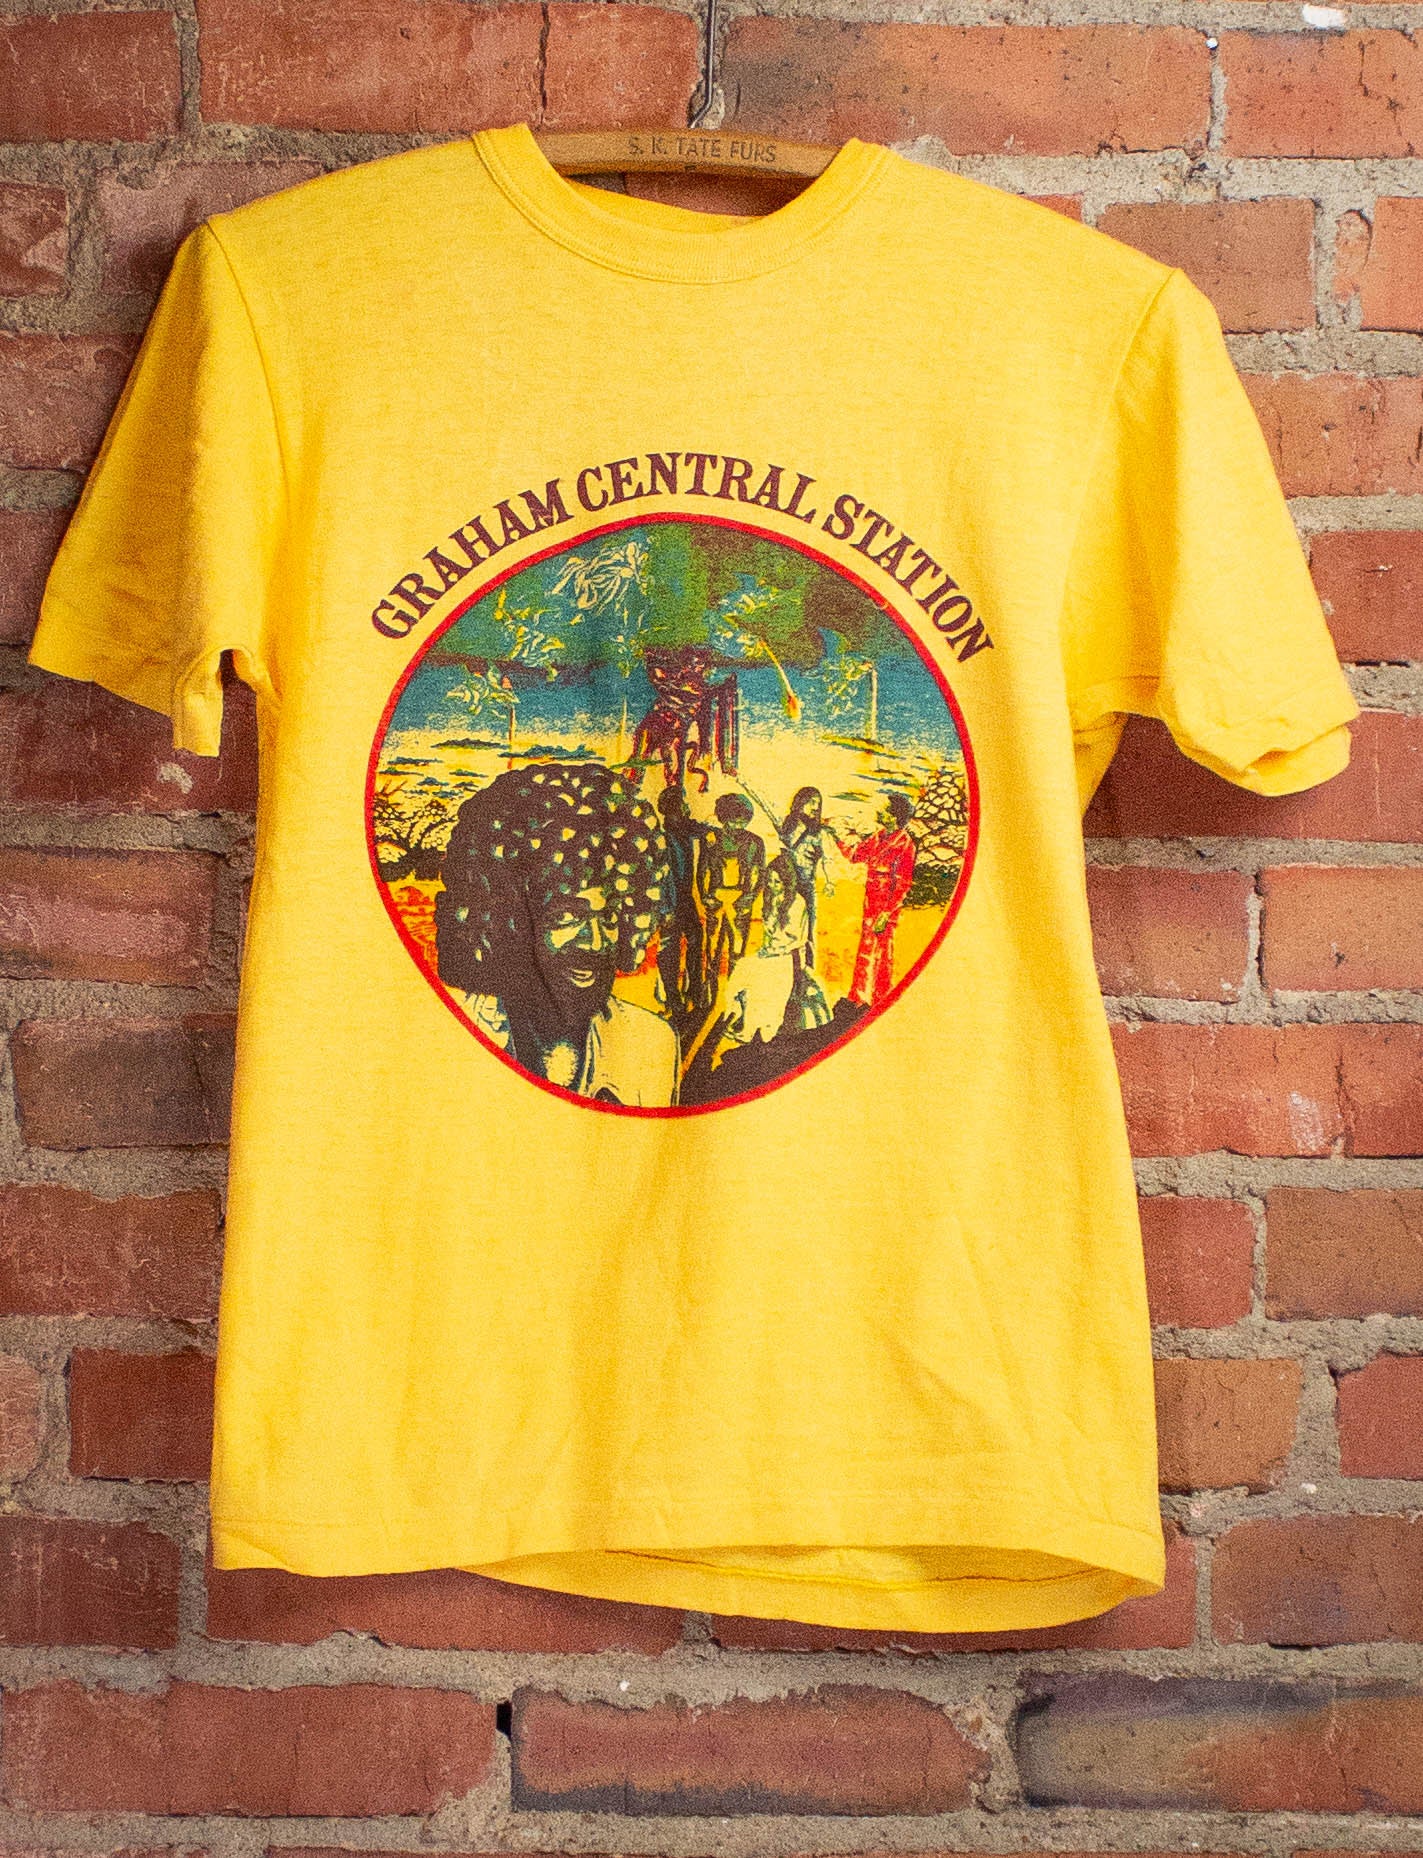 Vintage 1975 Graham Central Station Promo Concert T-Shirt XS